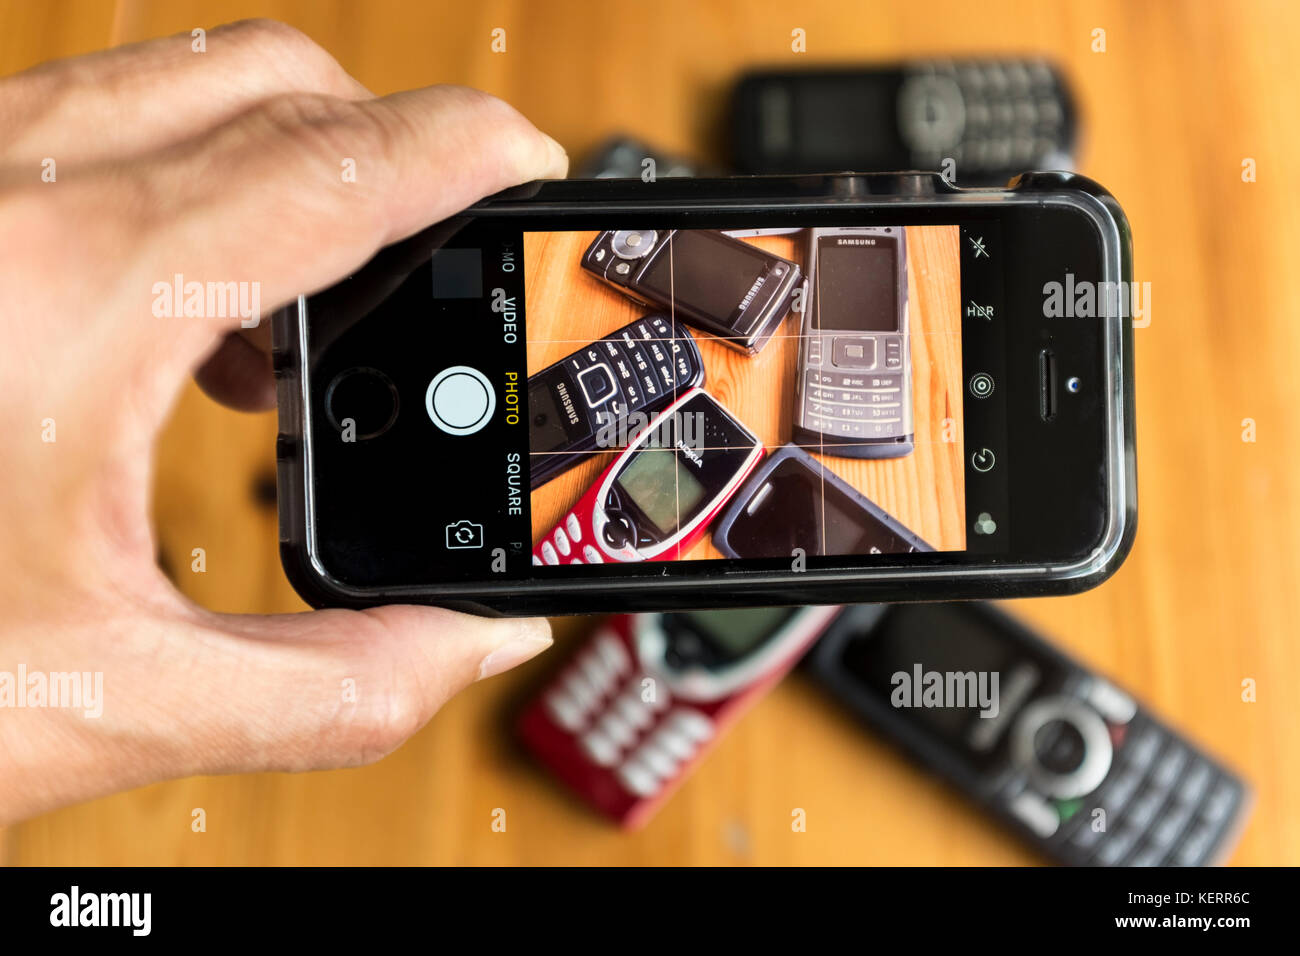 La prise de photo de l'ancien téléphone mobile désaffecté avec l'iPhone se smart phone Banque D'Images